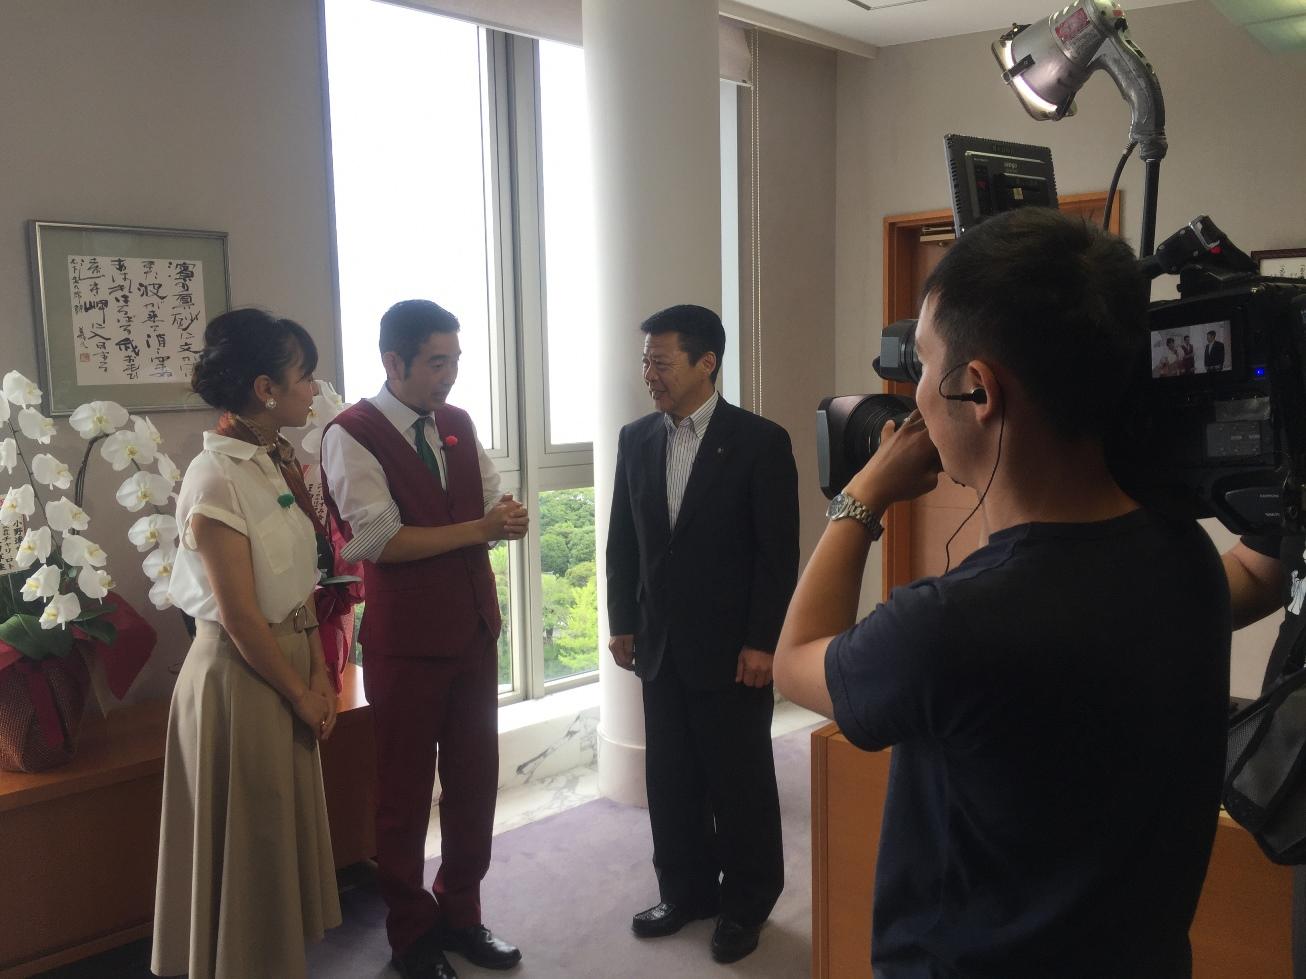 2017年7月2日静岡第一テレビ放送の取材を受ける市長を撮影クルーの写真